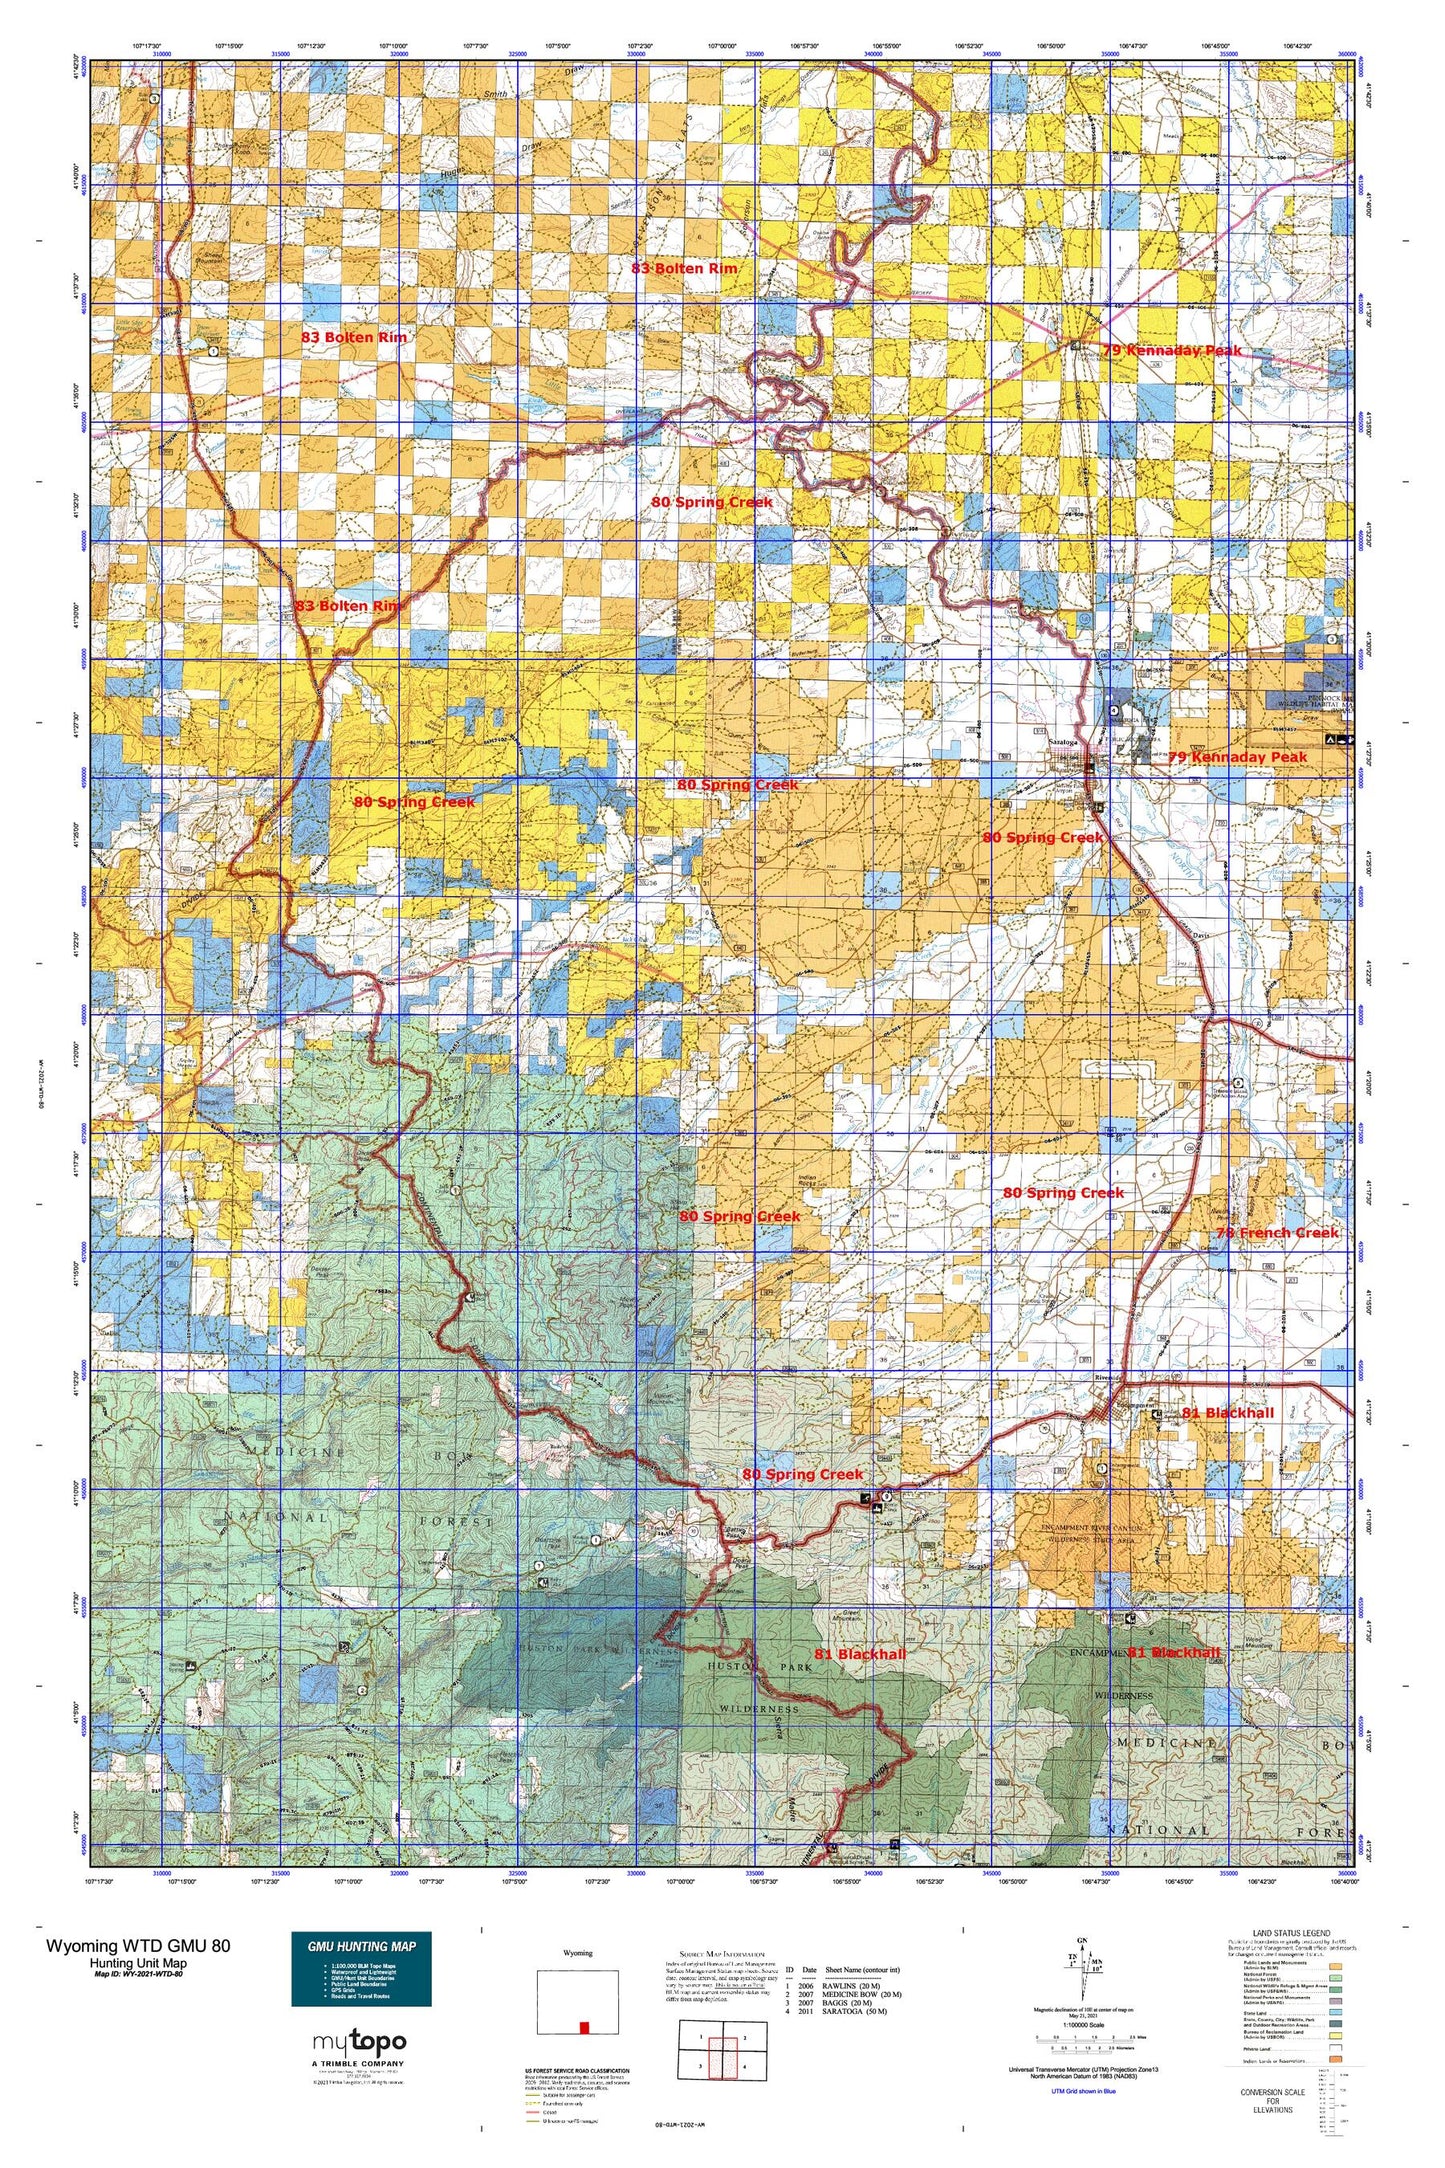 Wyoming Whitetail Deer GMU 80 Map Image